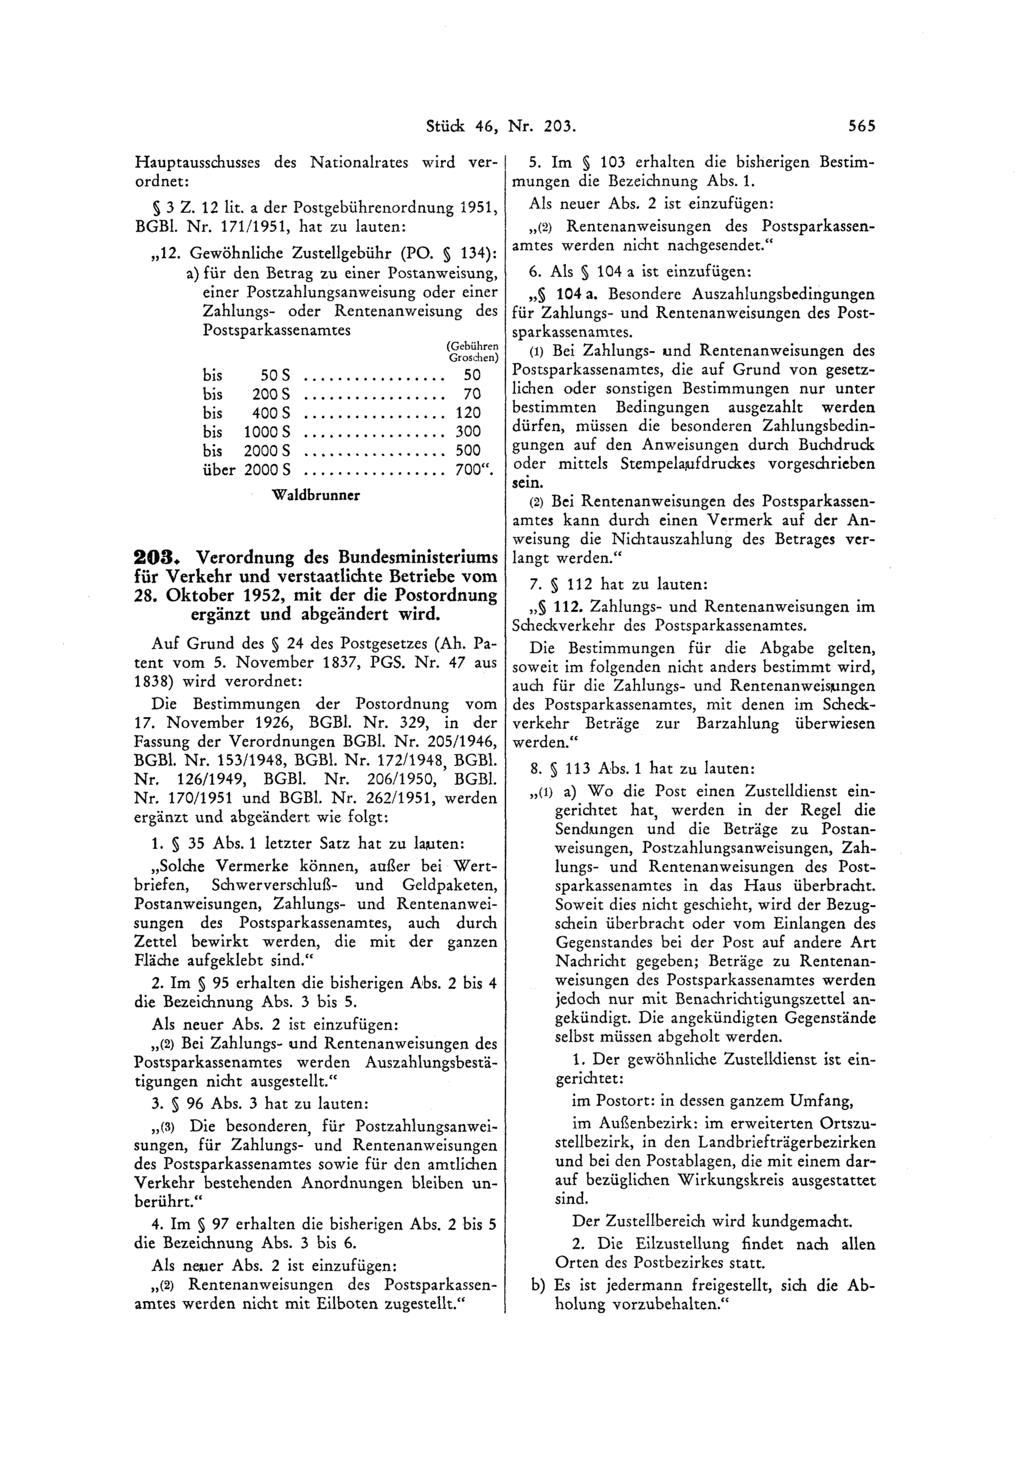 Hauptausschusses des Nationalrates wird verordnet: 3 2. 12 lit. a der Postgebührenordnung 1951, BGBl. Nr. 171/1951, hat zu lauten: Waldbrunner 203.